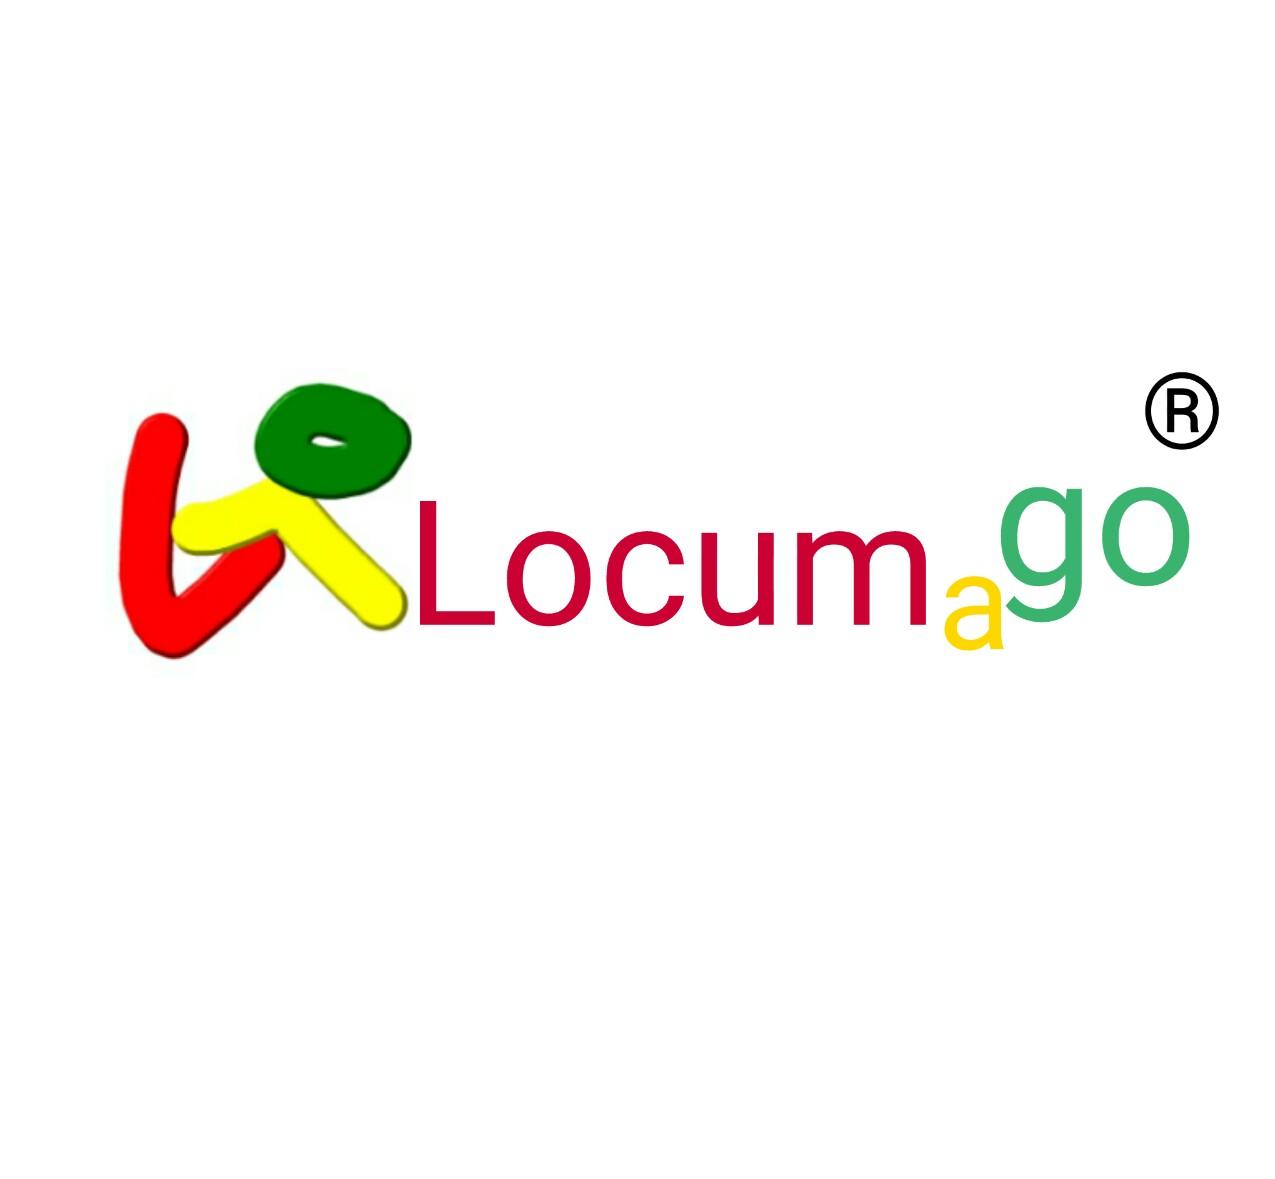 Locumago Logo